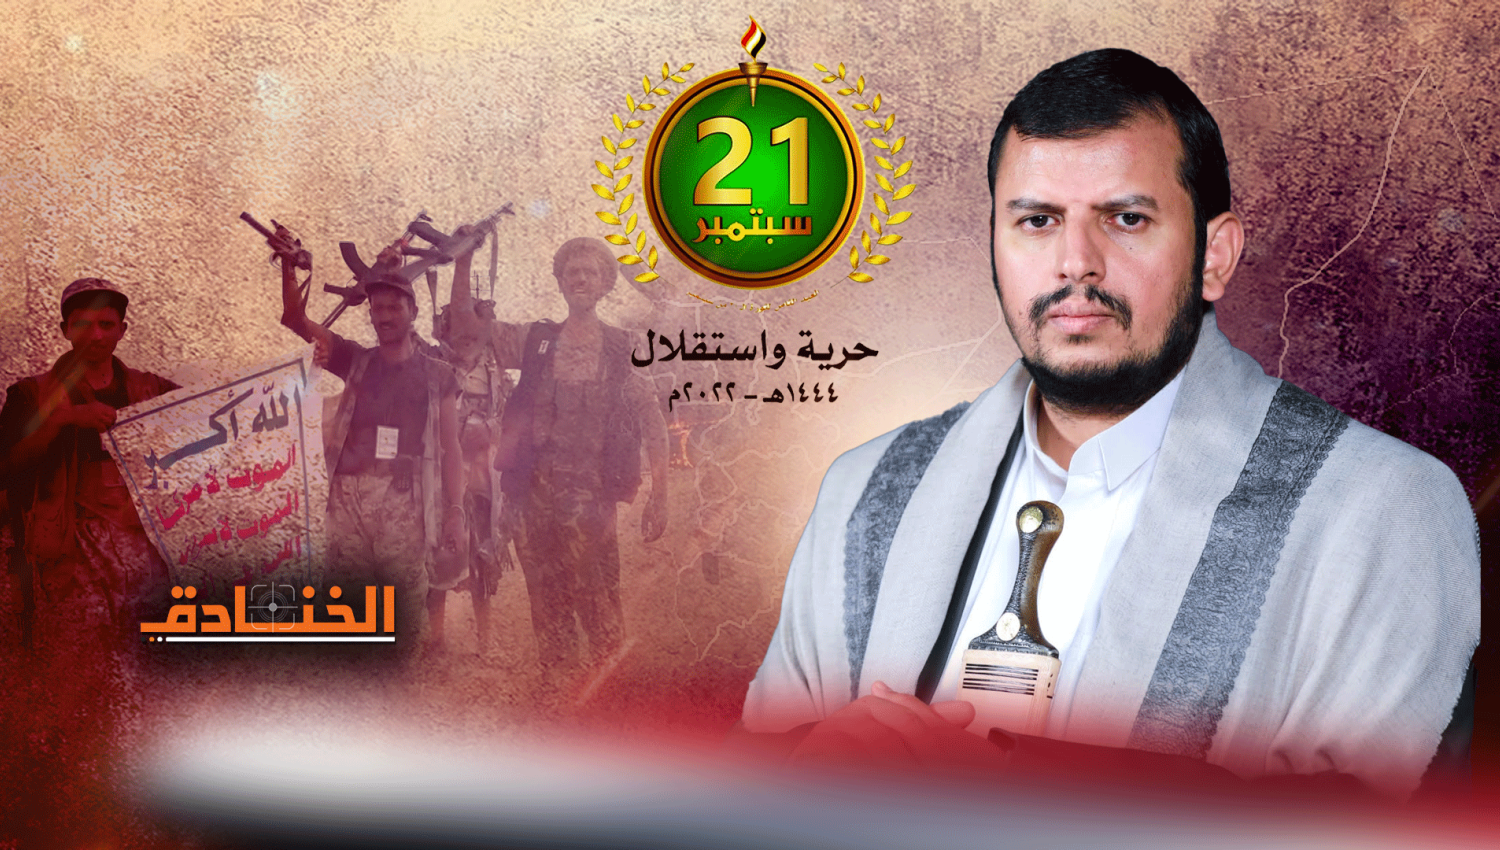 ثورة الضرورة: اليمن منتجاً للسلاح ومحافظاً على سيادته 